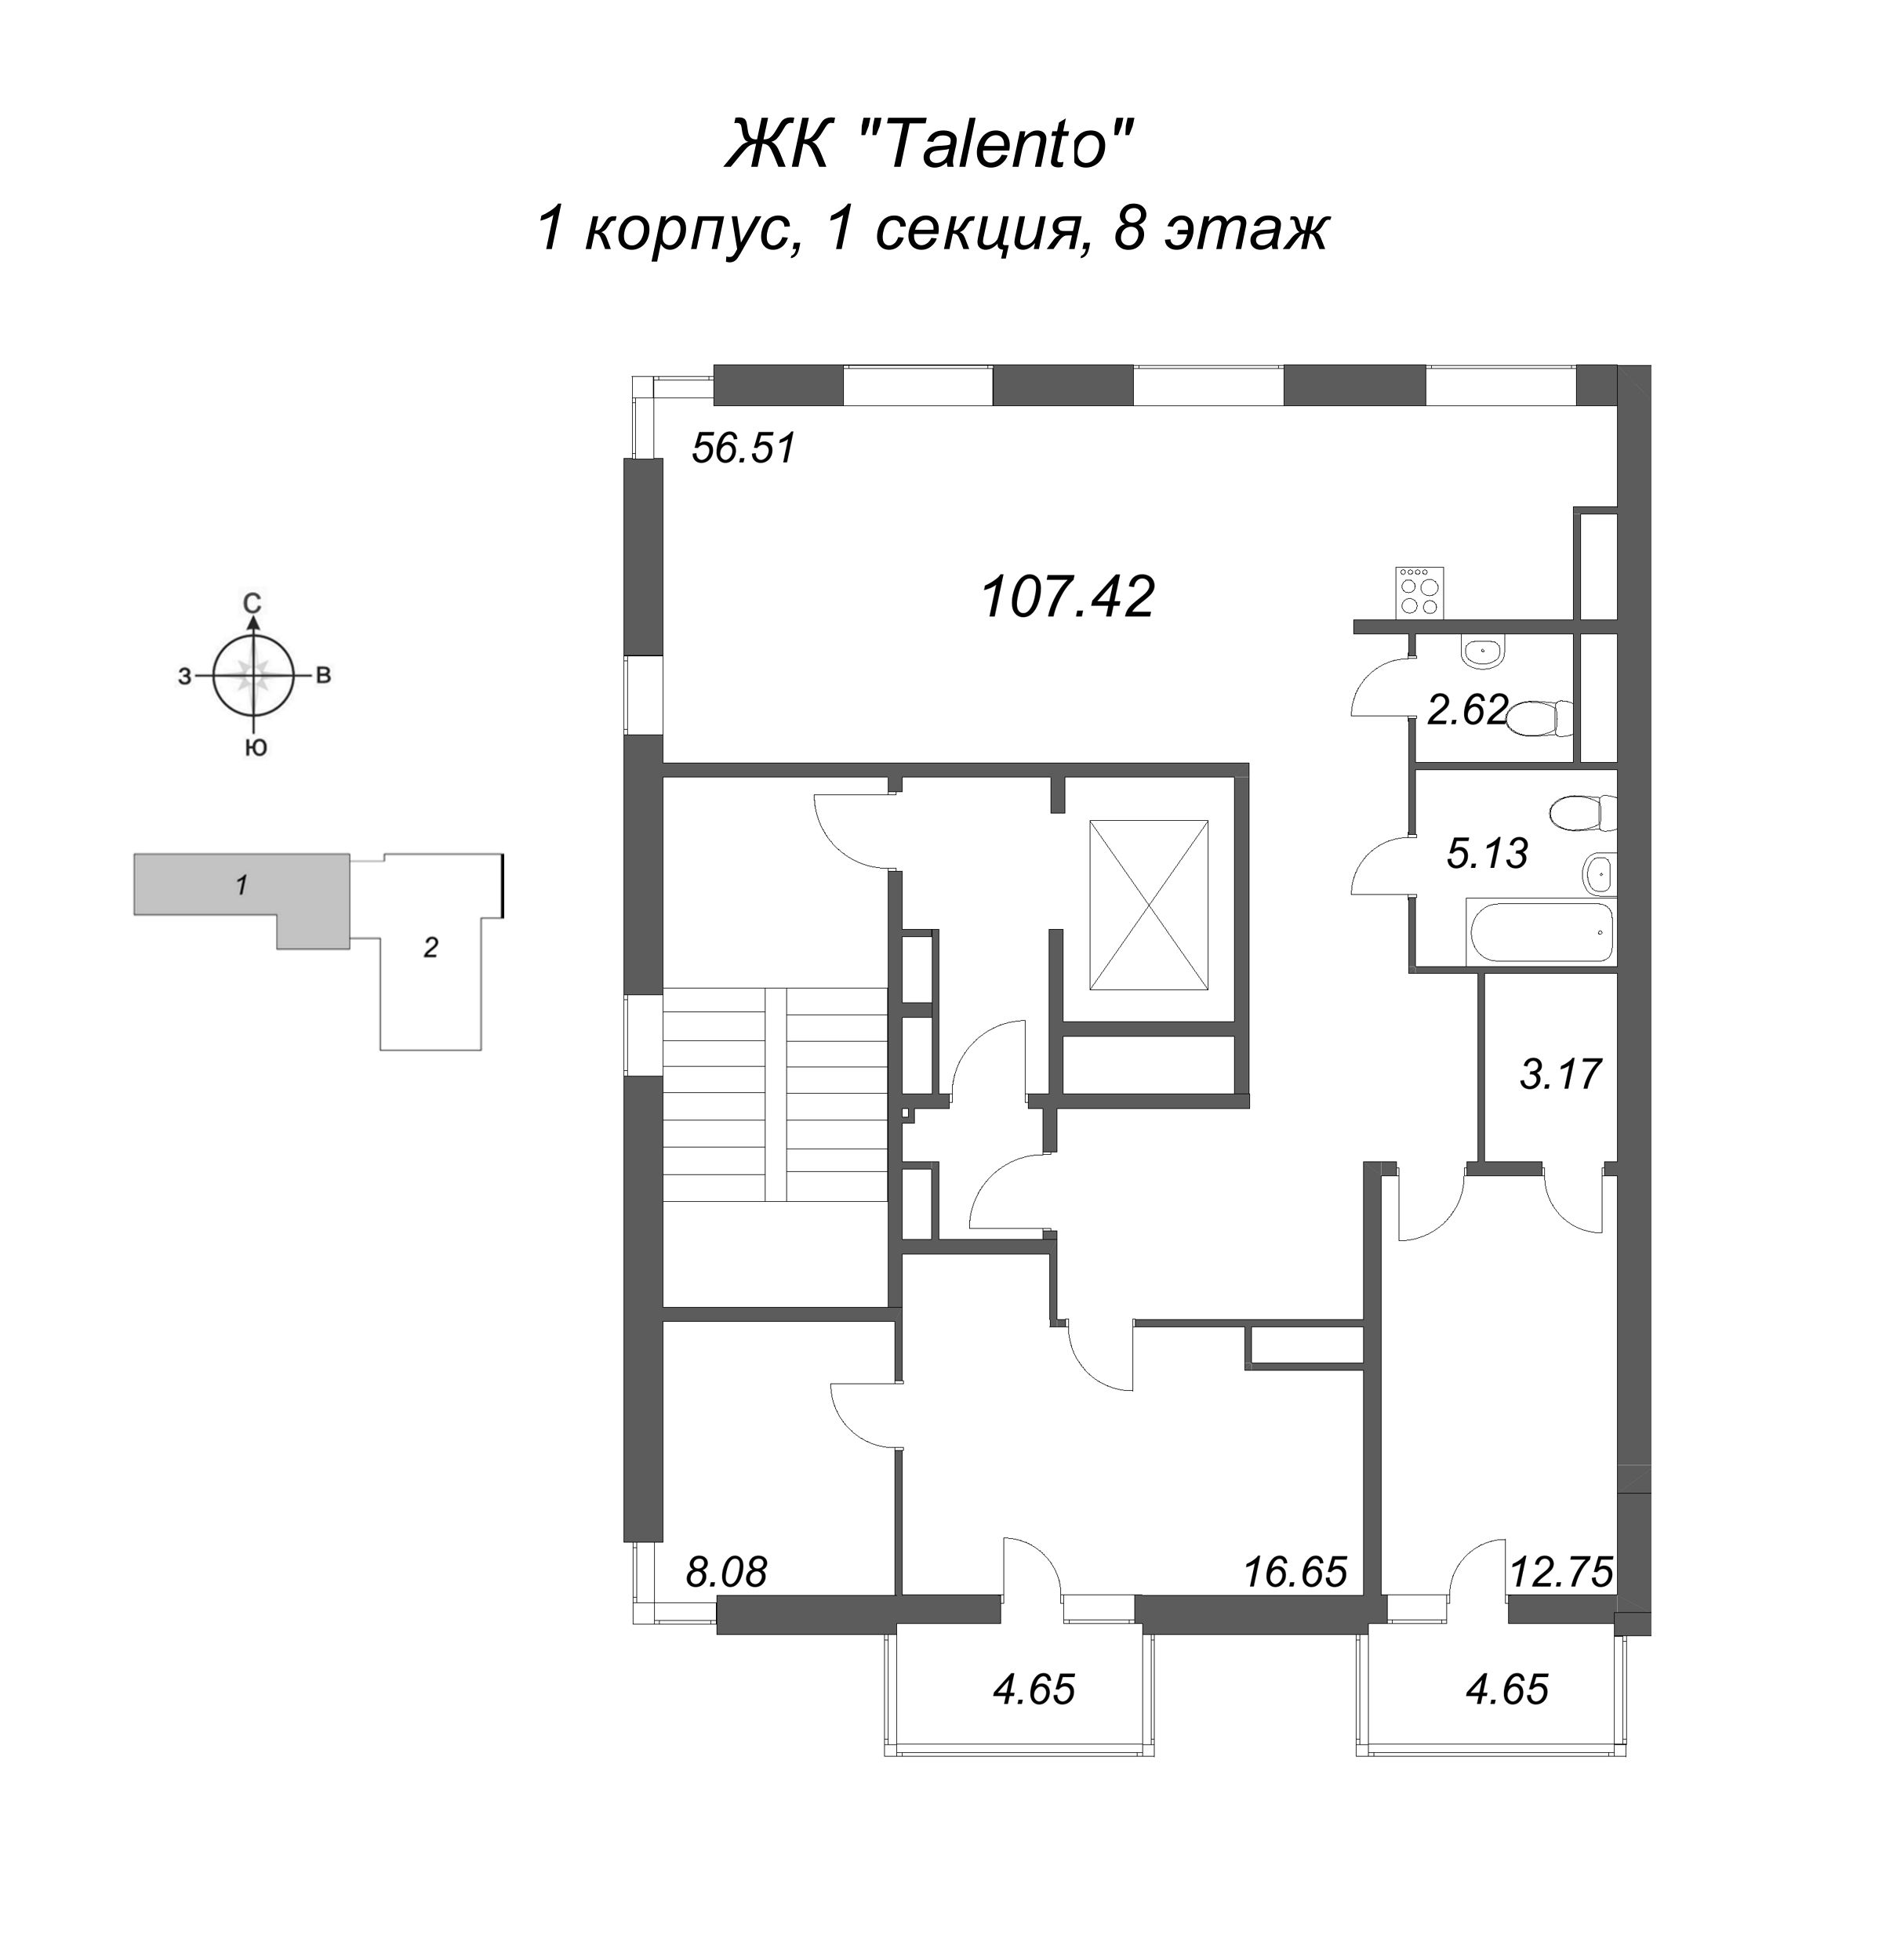 3-комнатная (Евро) квартира, 107.42 м² в ЖК "Talento" - планировка этажа